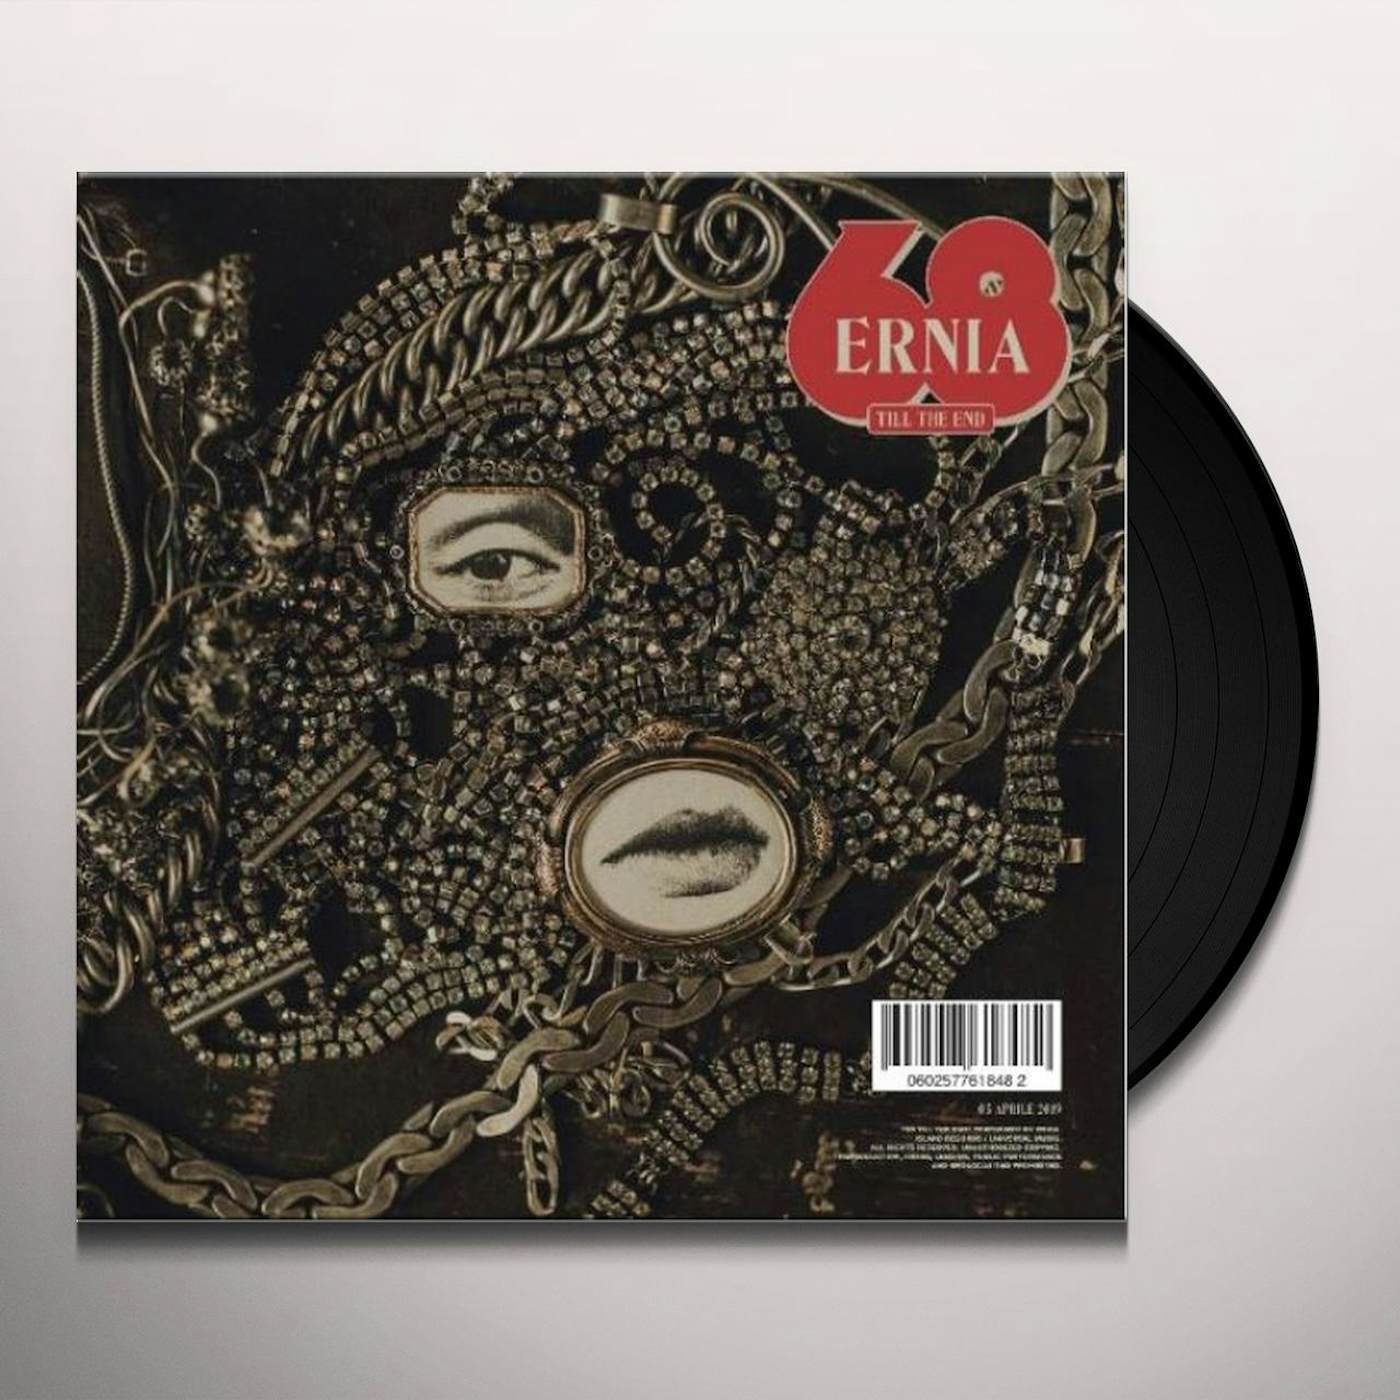 Ernia 68 (Till The End) Vinyl Record